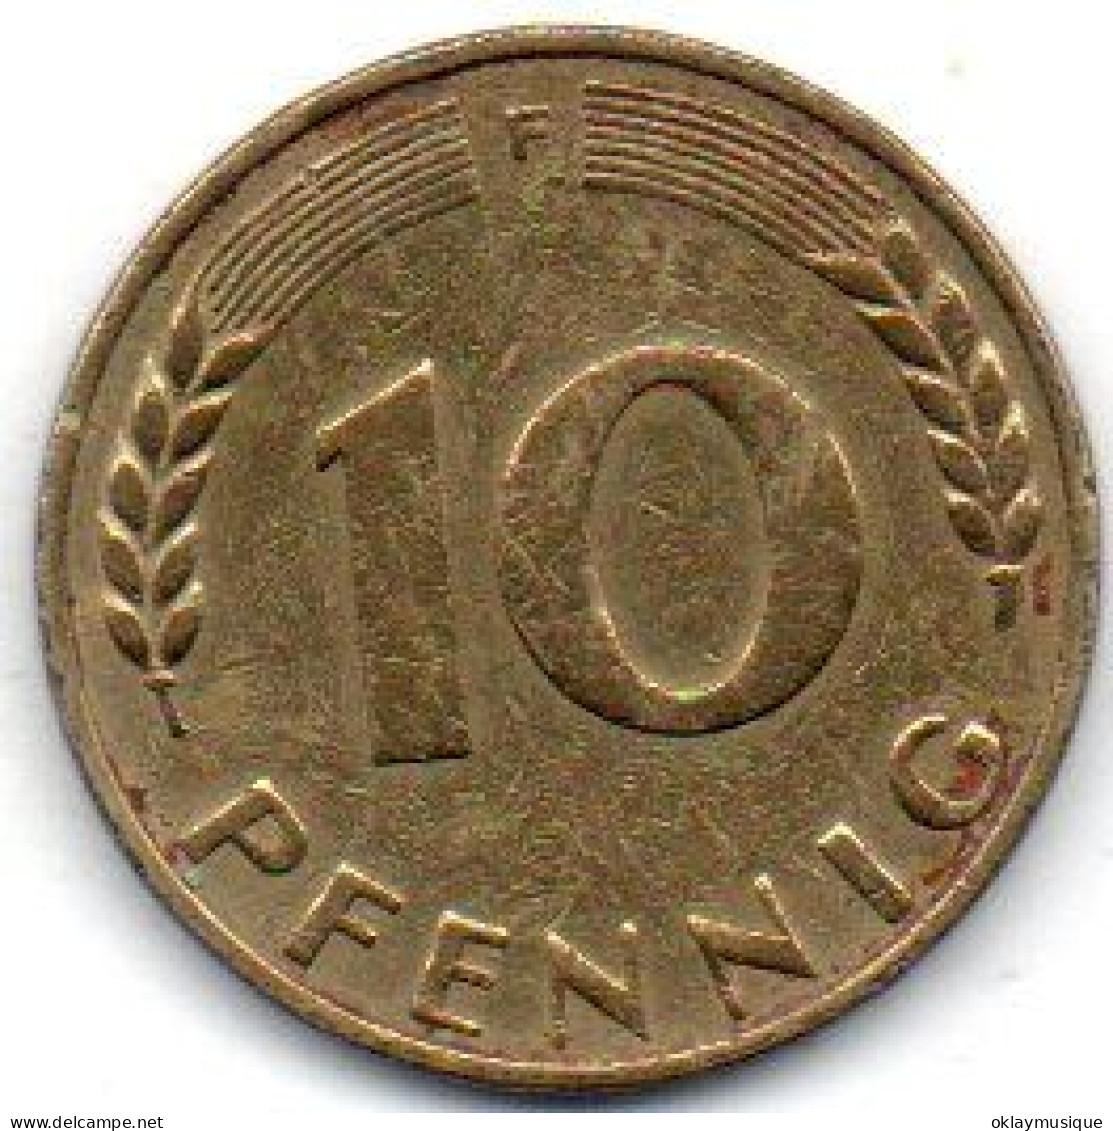 10 Pfennig 1950D - Danemark